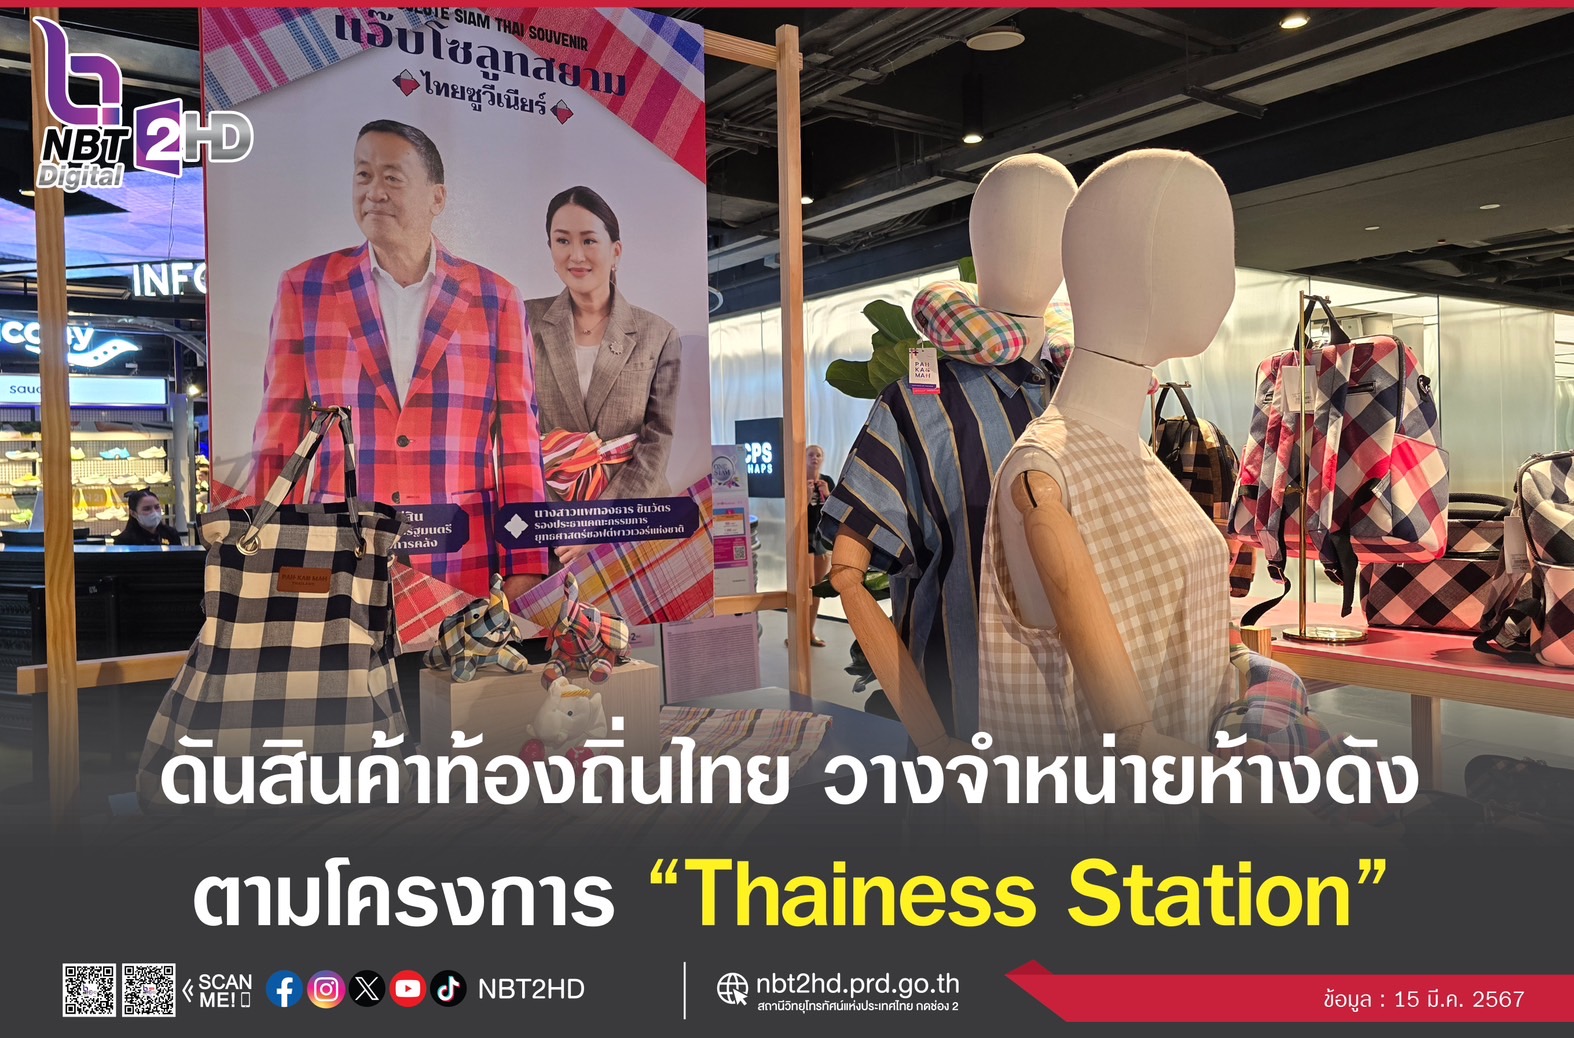 นายกฯ ดันสินค้าภูมิปัญญาท้องถิ่นไทย วางจำหน่ายในห้างดัง ตั้งแต่ 15 มี.ค.-30 เม.ย.นี้ ยืนยันร่วมมือแบรนด์แฟชั่นต่างประเทศนำสินค้าท้องถิ่นไทยสู่ตลาดโลก